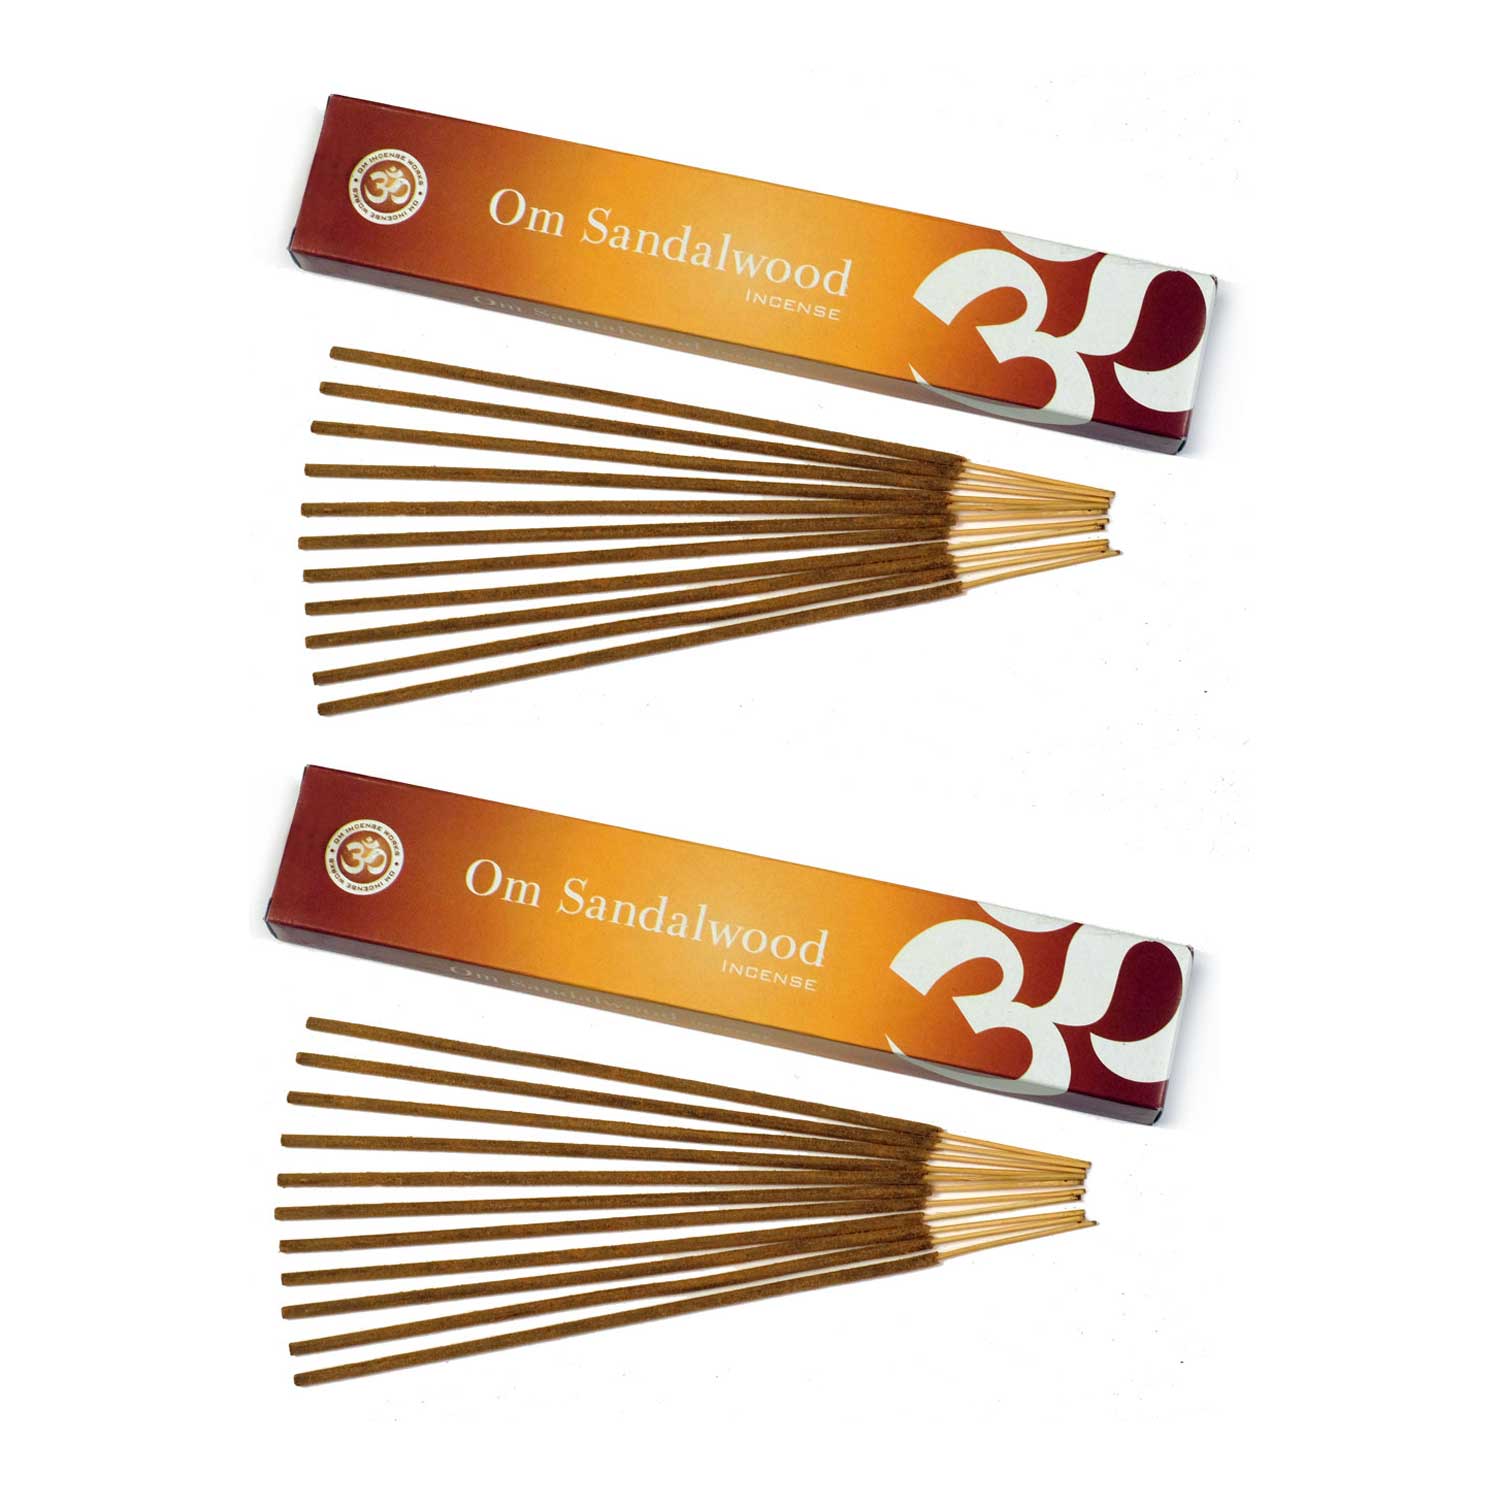 Om Incense Works Natural Fragrance Incense Sticks 2 Pack (15 grams per Box)